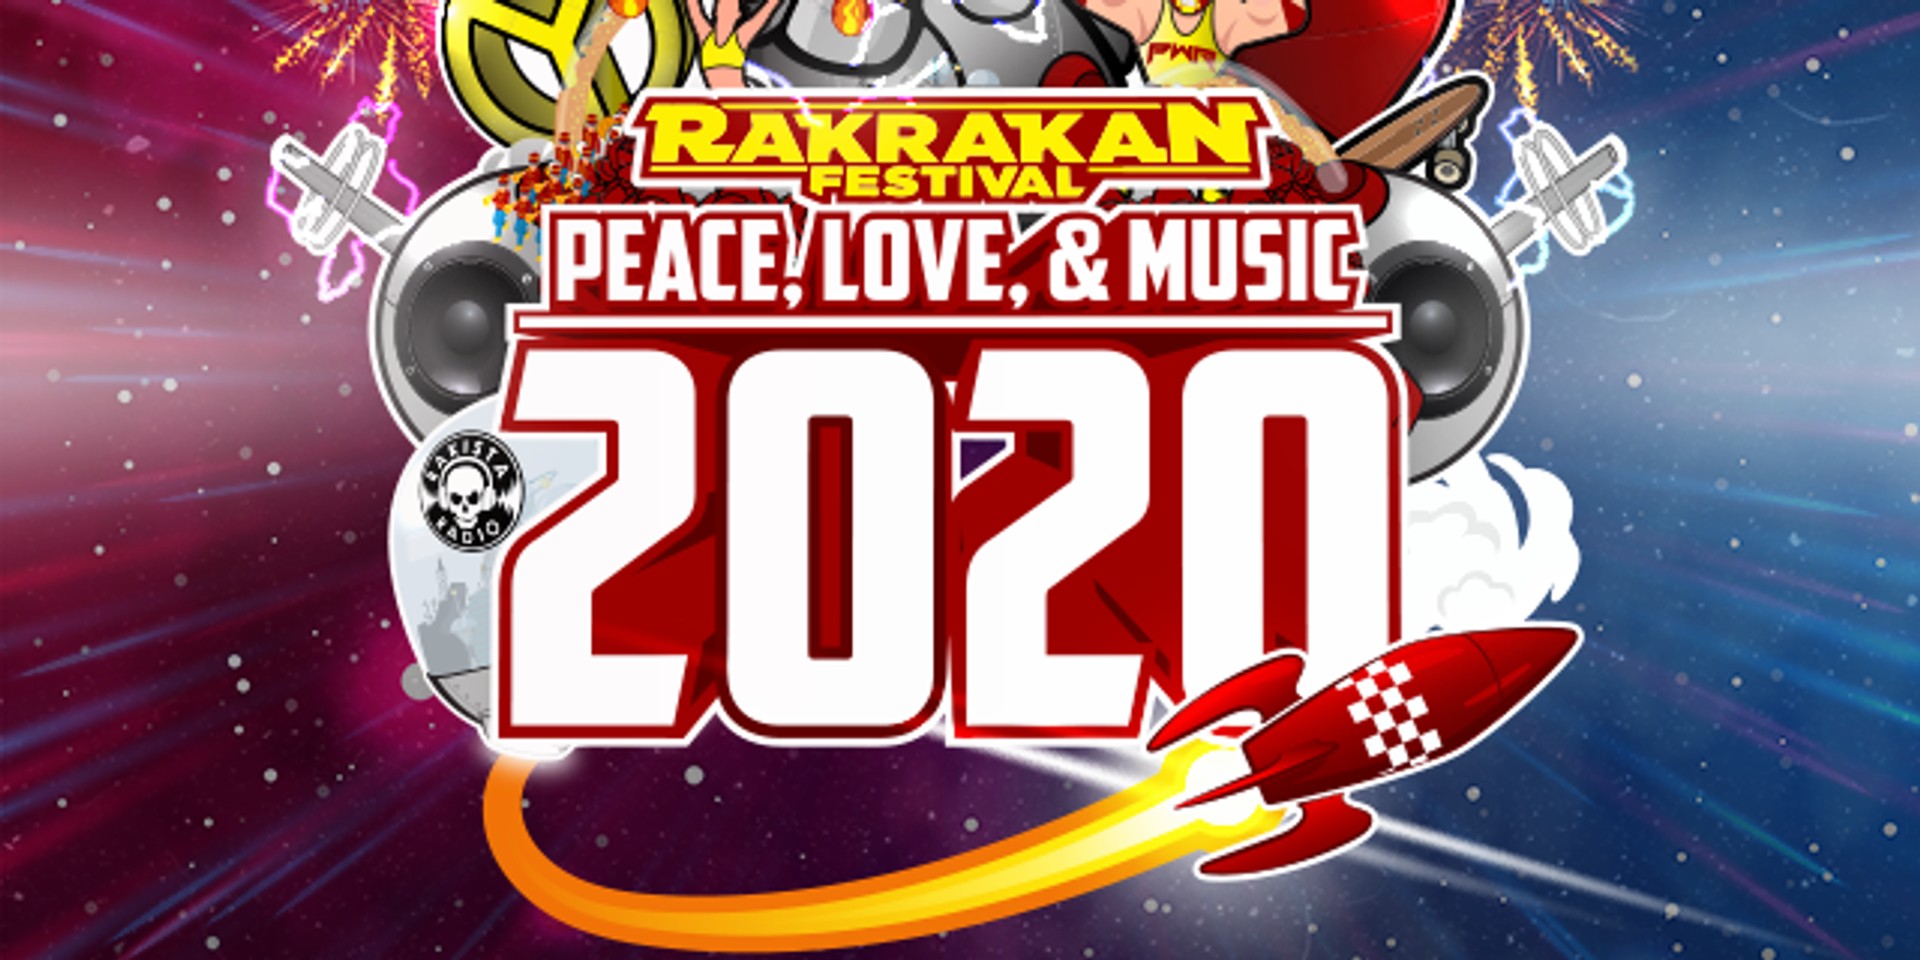 Rakrakan Festival postponed to April 2020